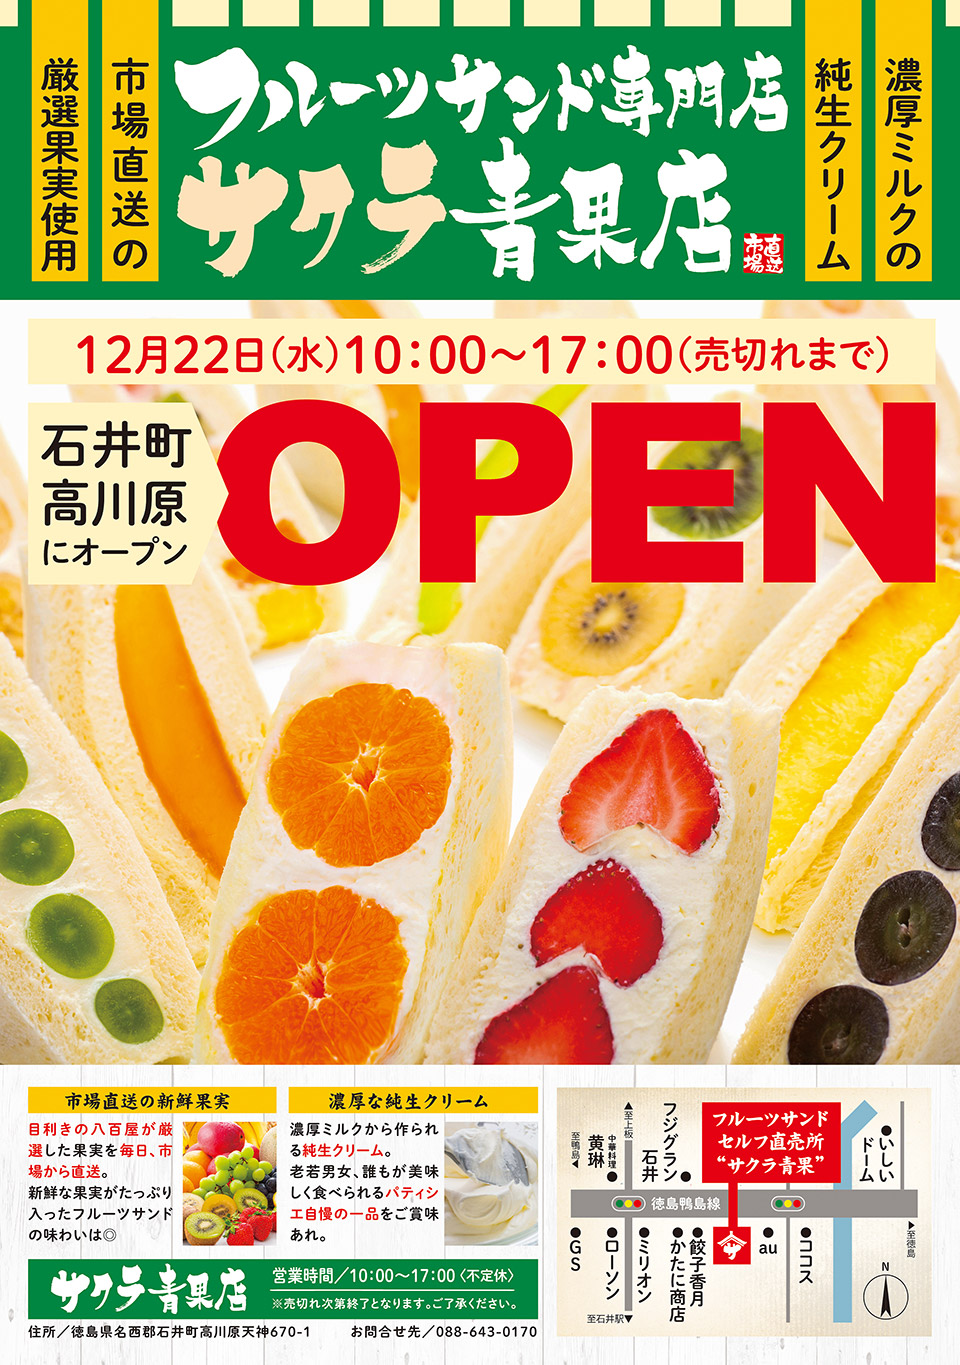 徳島を拠点とした飲食店を展開するふじやグループオフィシャルサイト